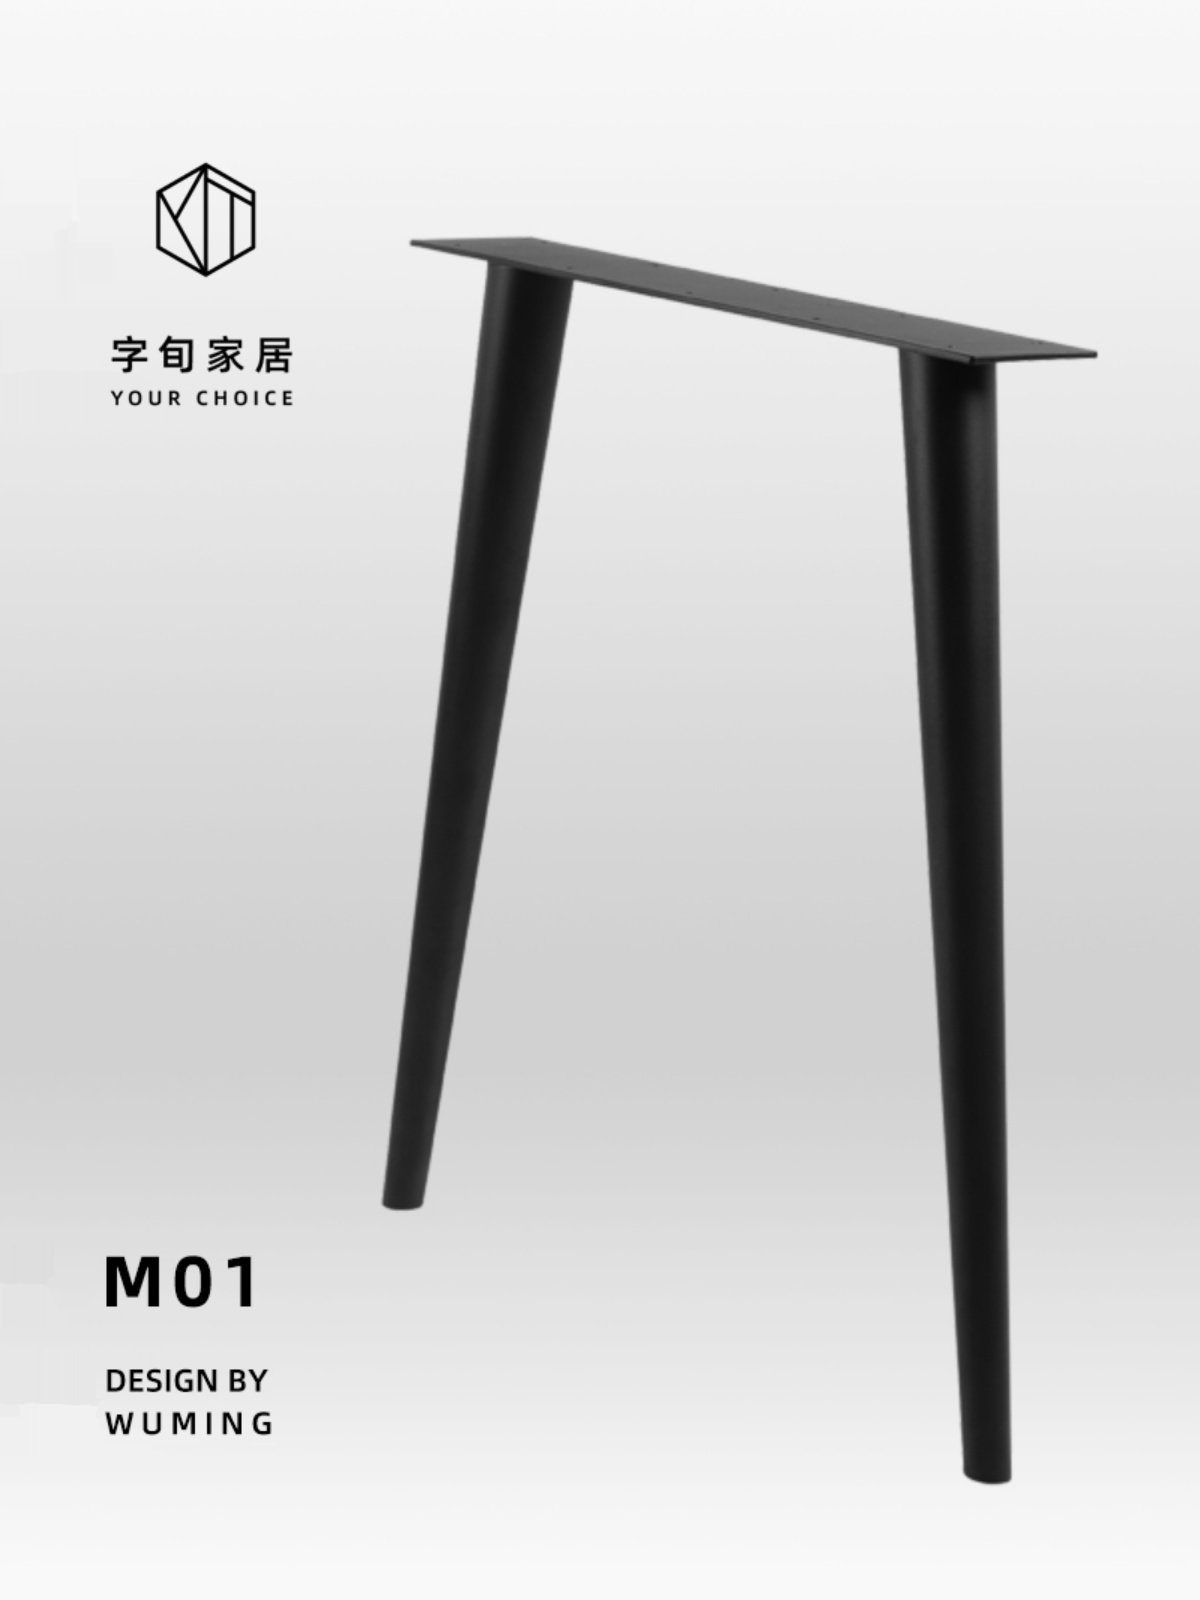 新品简约圆锥形铁艺金属餐桌腿吧台办公桌脚工业风桌脚架子实木桌